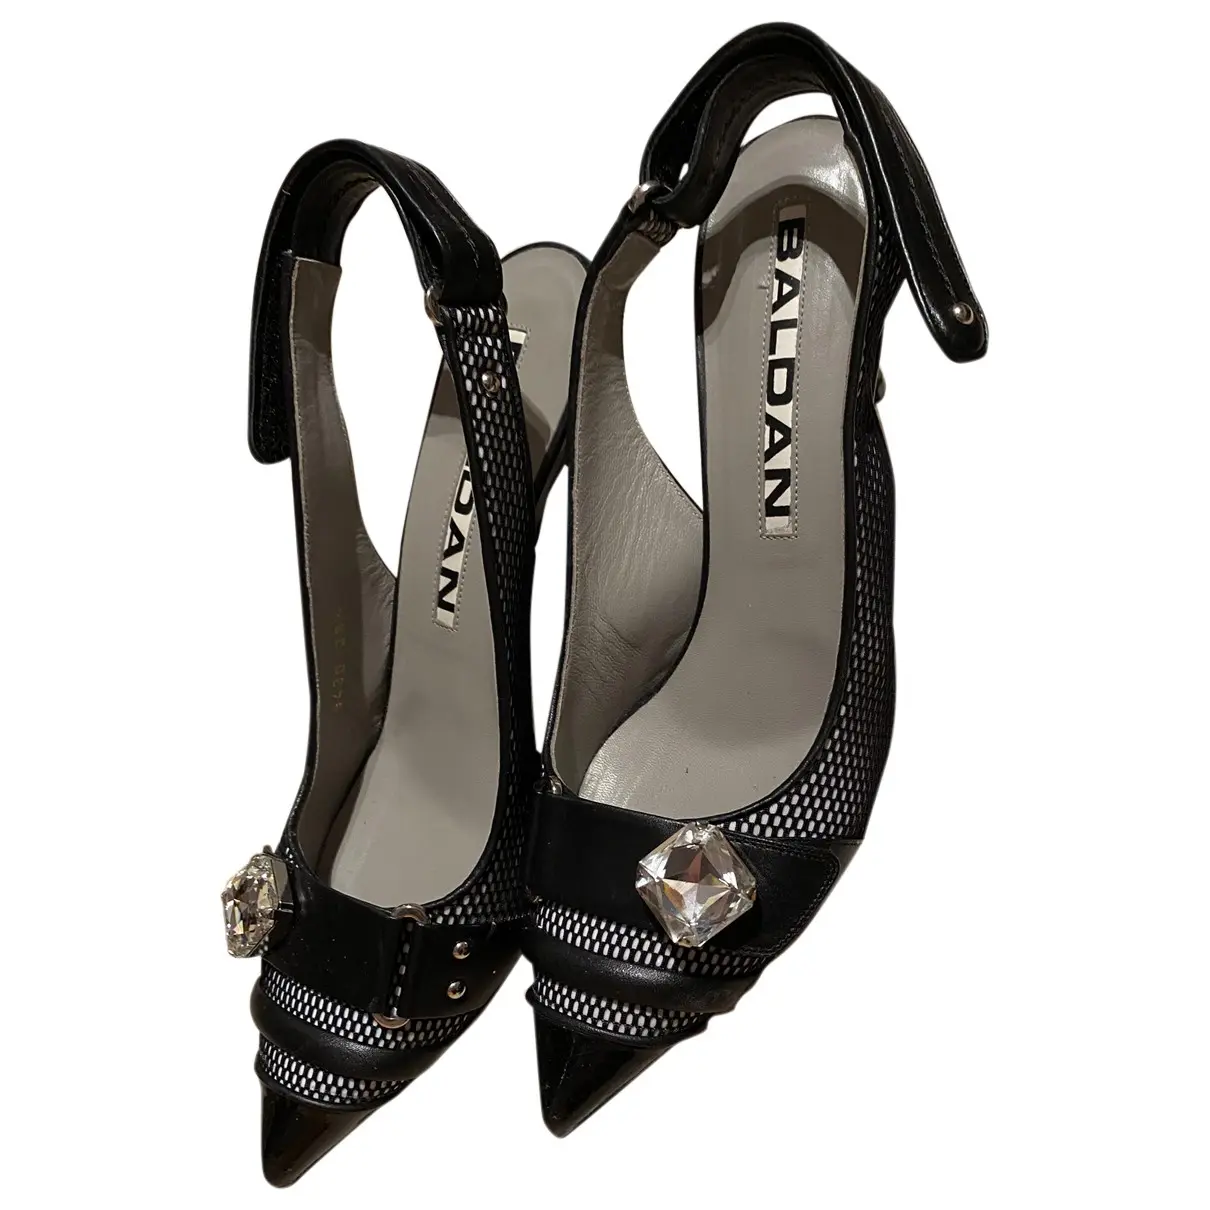 Leather heels Amanda Baldan